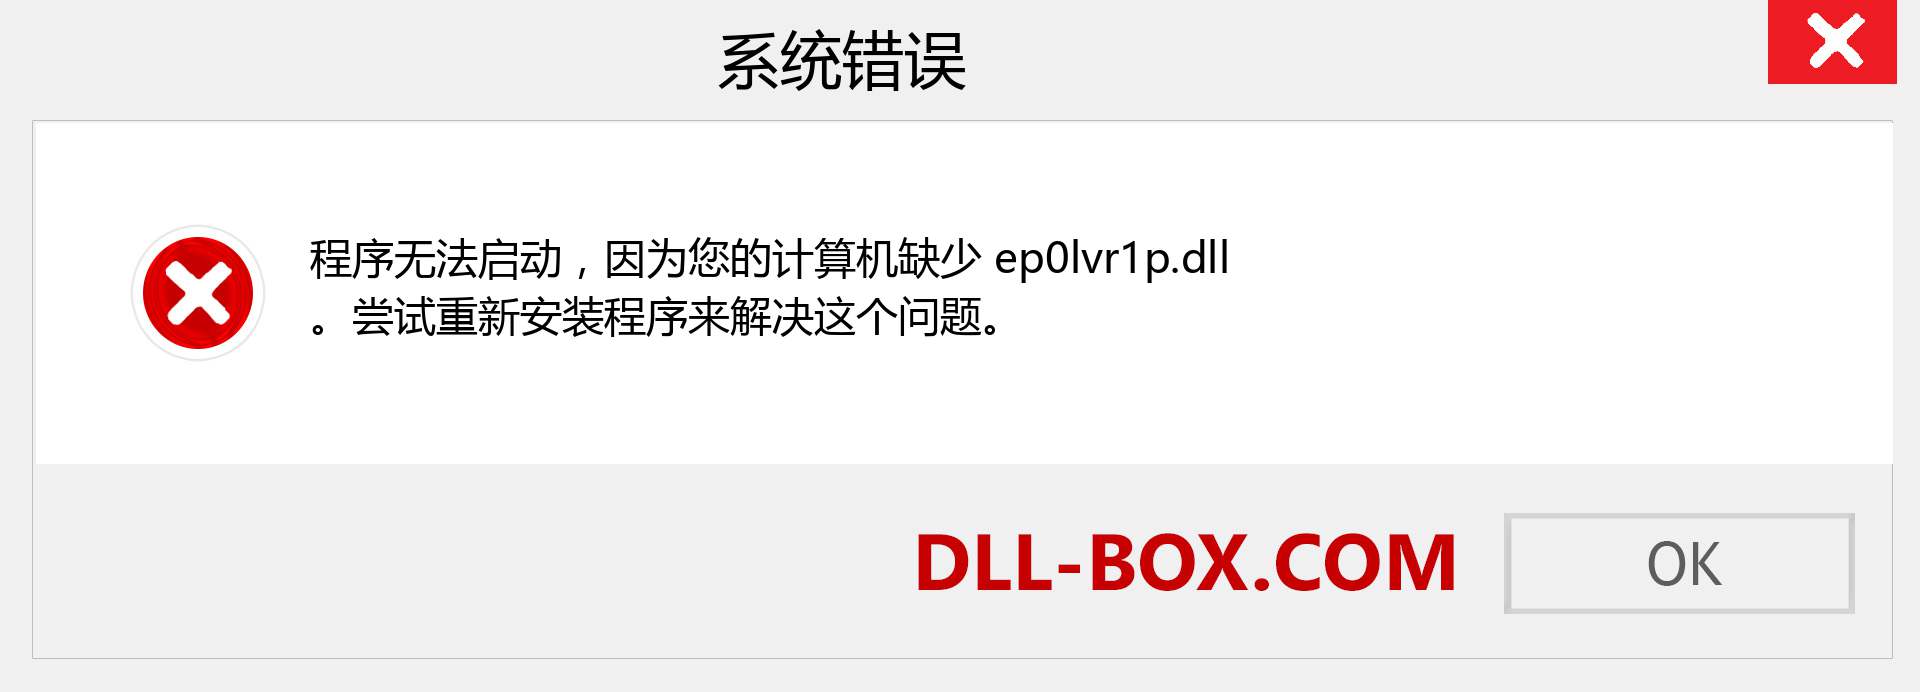 ep0lvr1p.dll 文件丢失？。 适用于 Windows 7、8、10 的下载 - 修复 Windows、照片、图像上的 ep0lvr1p dll 丢失错误